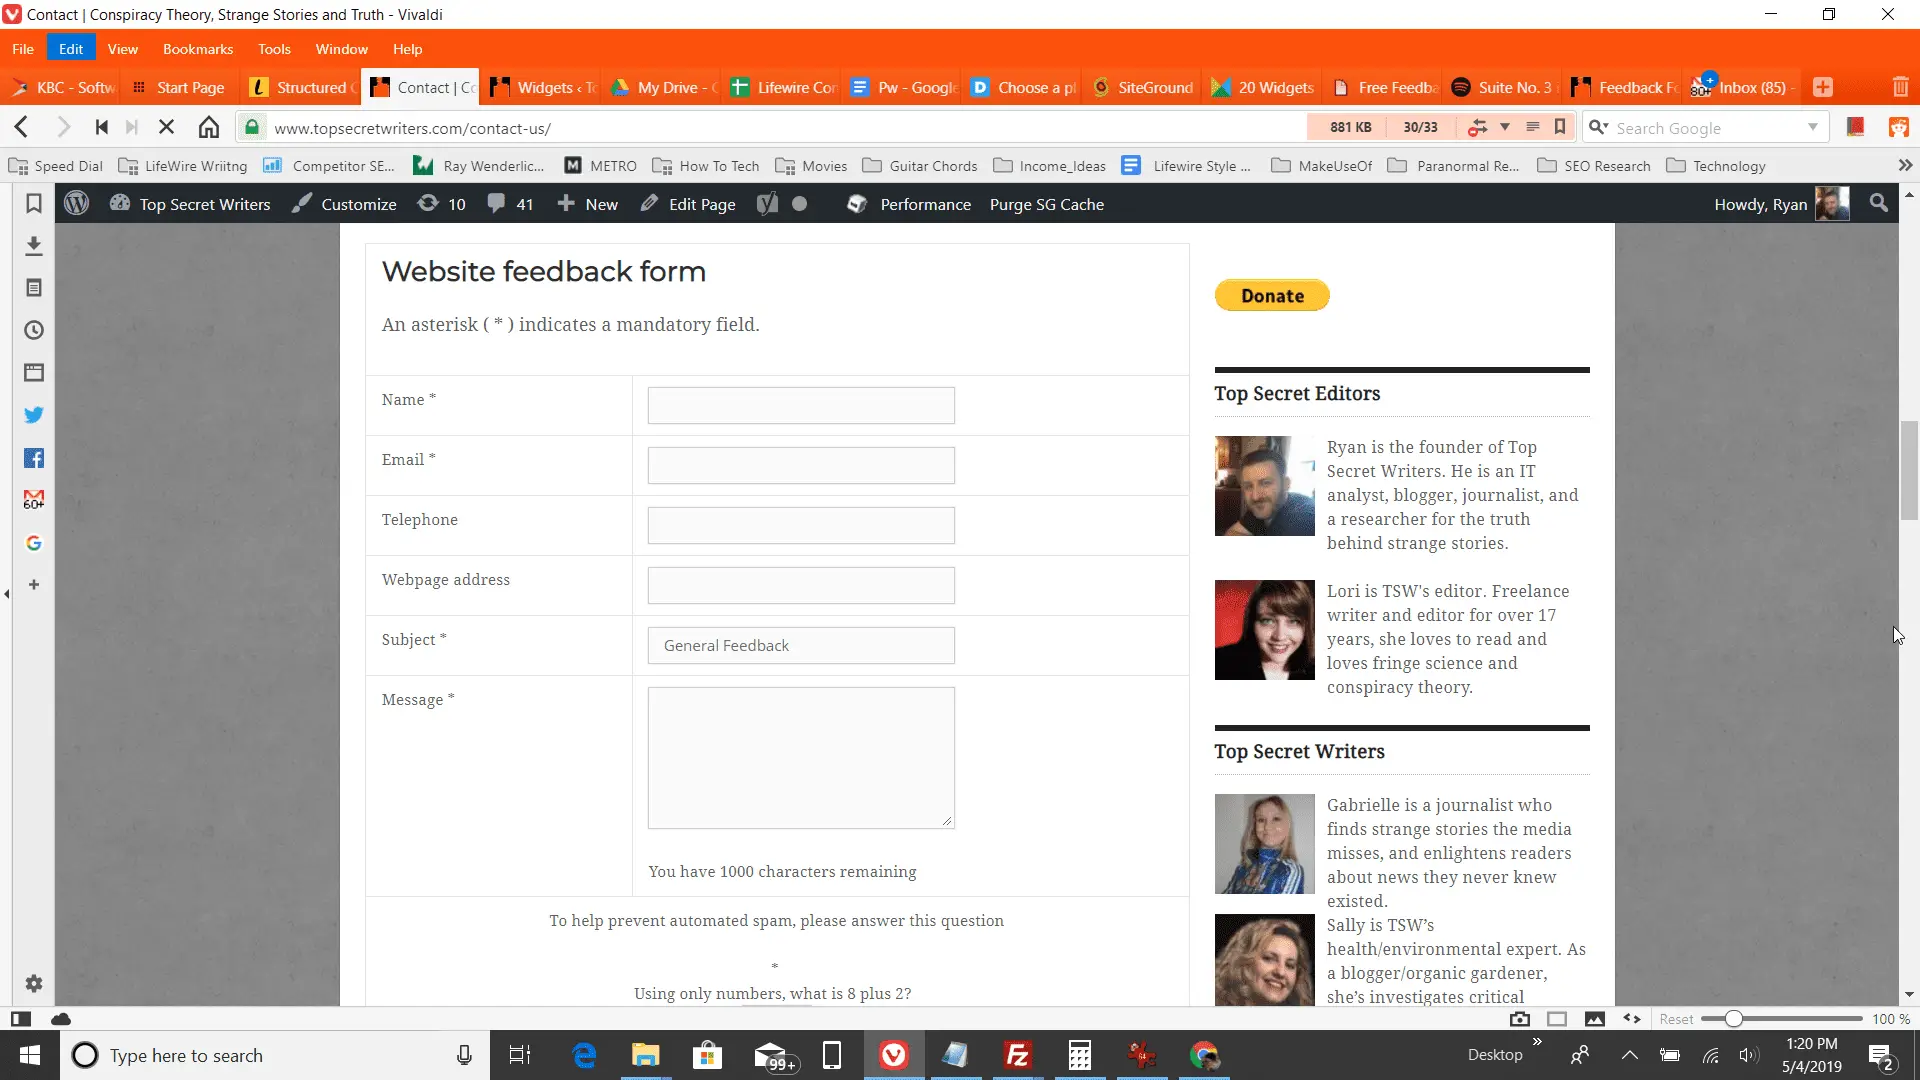 Formulário de feedback grátis instalado, um exemplo de widget de aprimoramento de blog